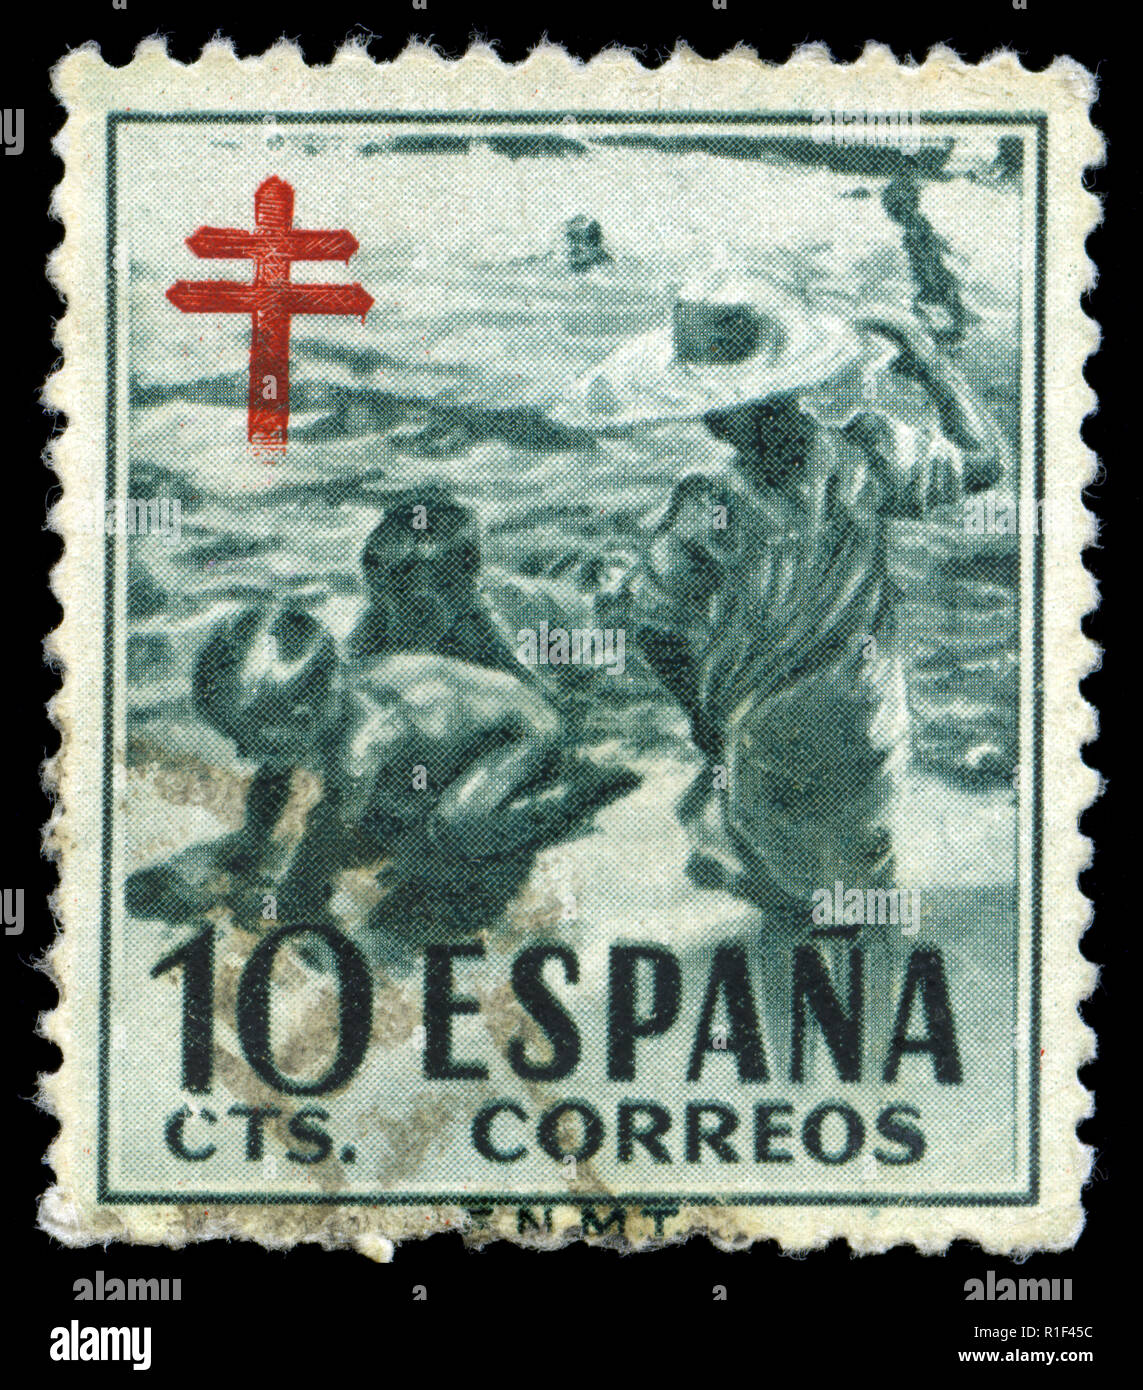 I francobolli dalla Spagna in Pro-tubercolosi serie emesse nel 1951 Foto  stock - Alamy